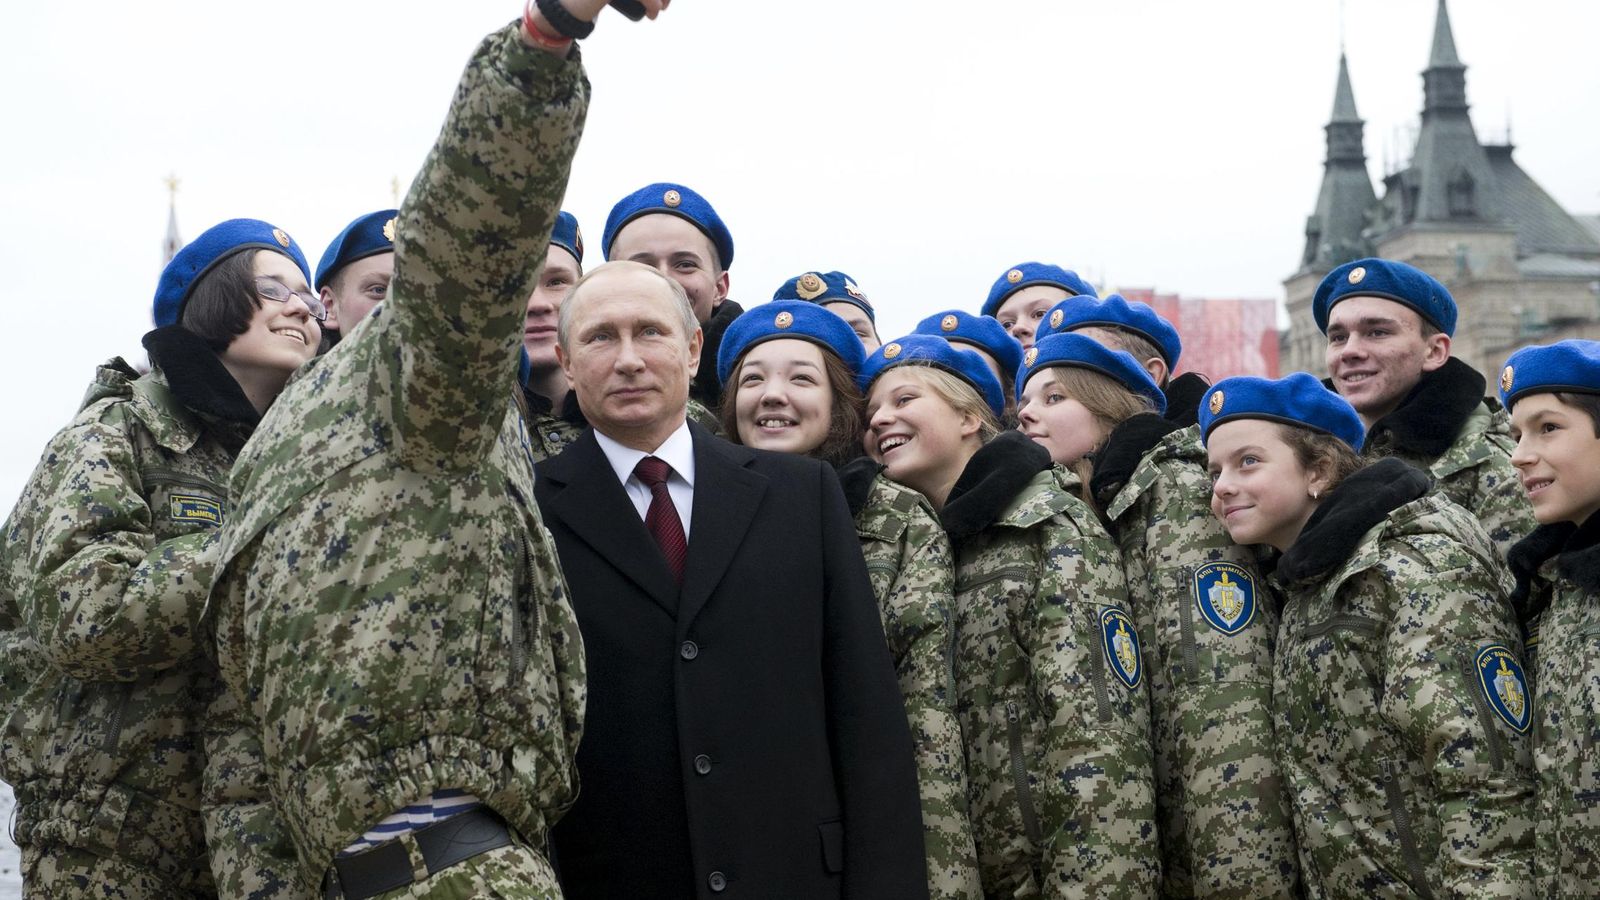 Foto: Vladimir Putin posa con miembros del club militar Vympel durante una ceremonia en Moscú, el 4 de noviembre de 2015. (Reuters)